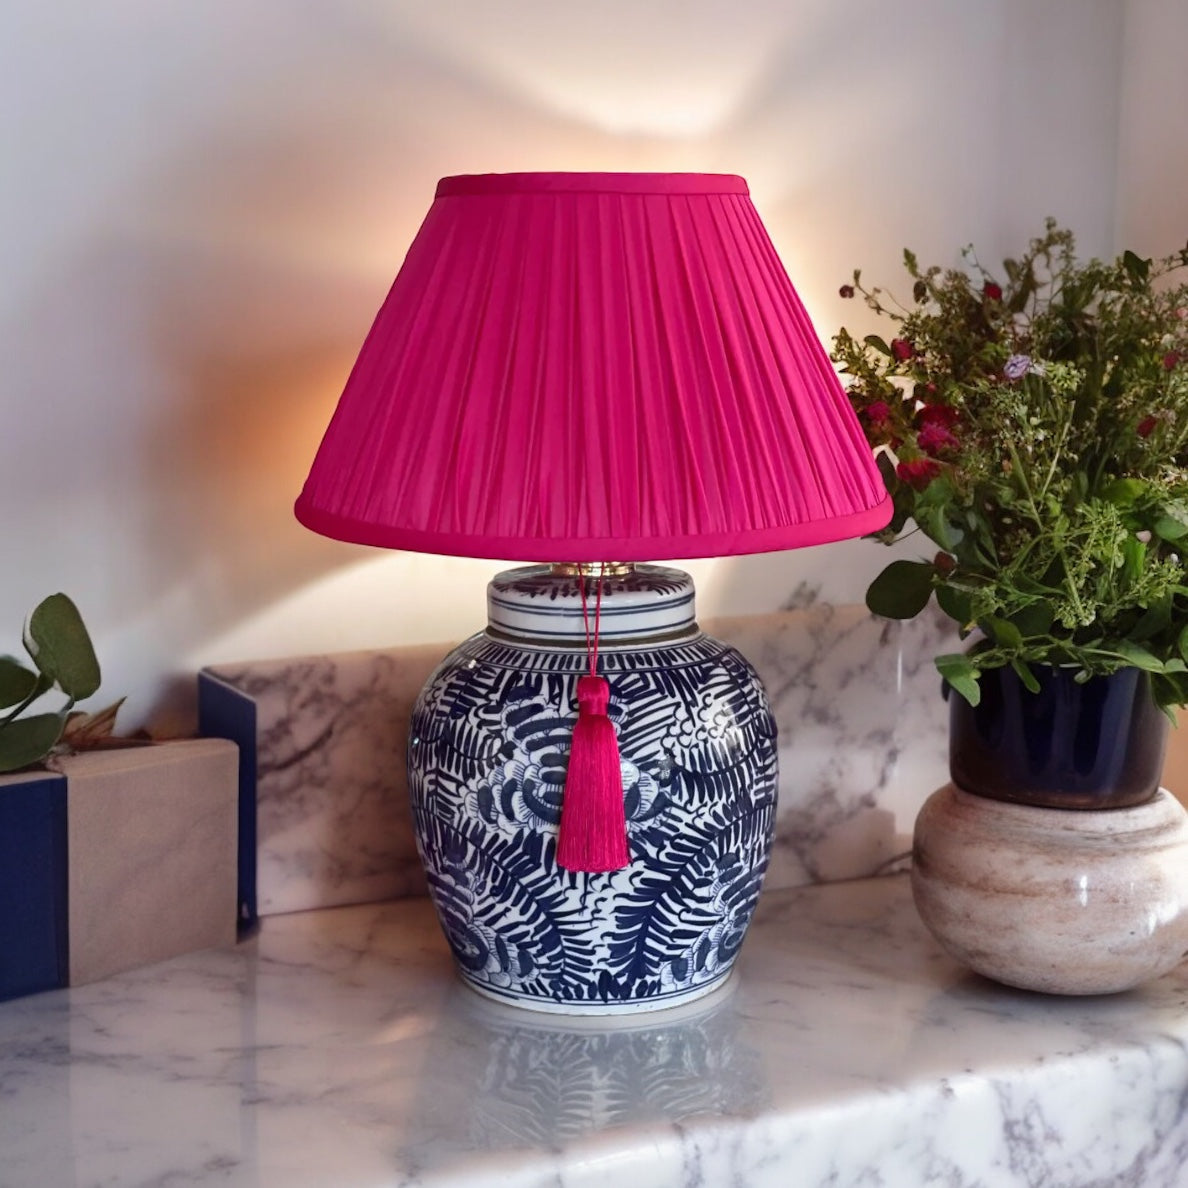 GINGER JAR LAMP: 3 designs